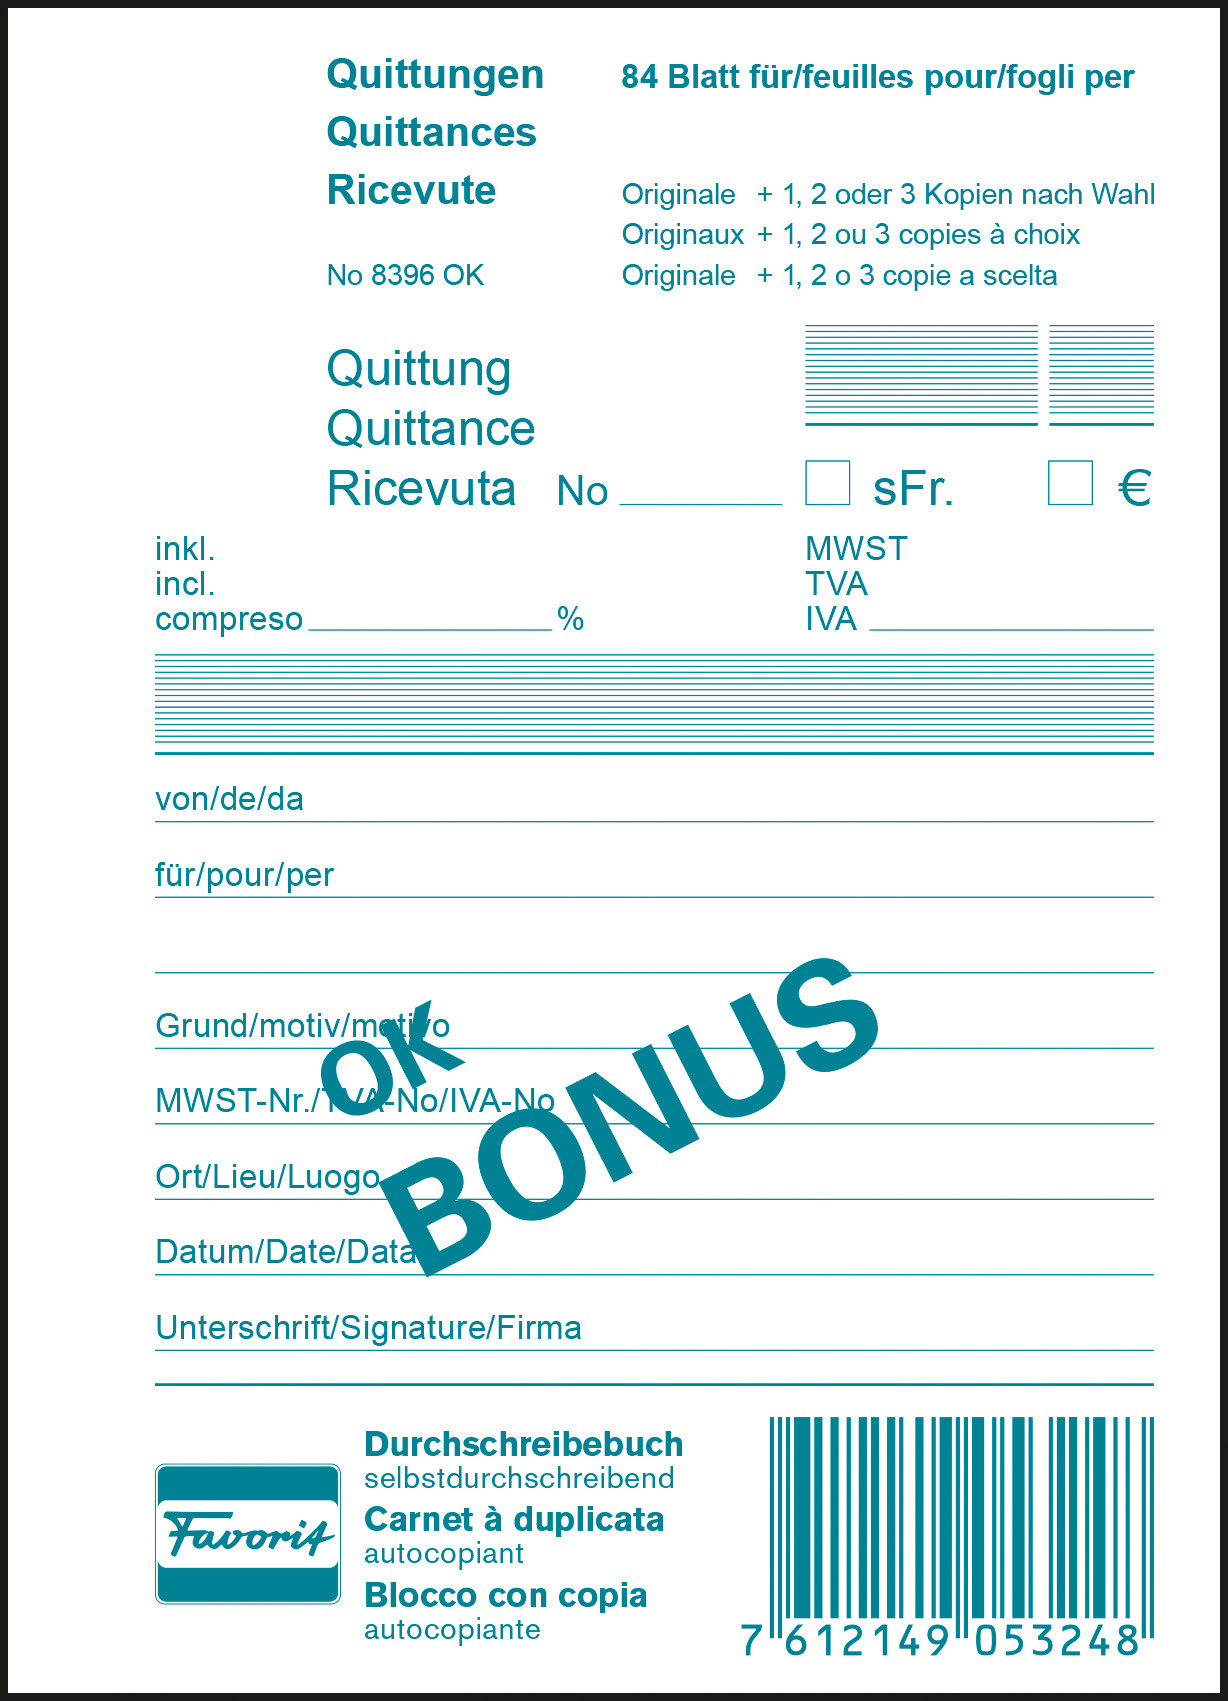 FAVORIT Quittungen OK BONUS D/F/I A6 8396 OK Durchschreibepapier 84 Blatt